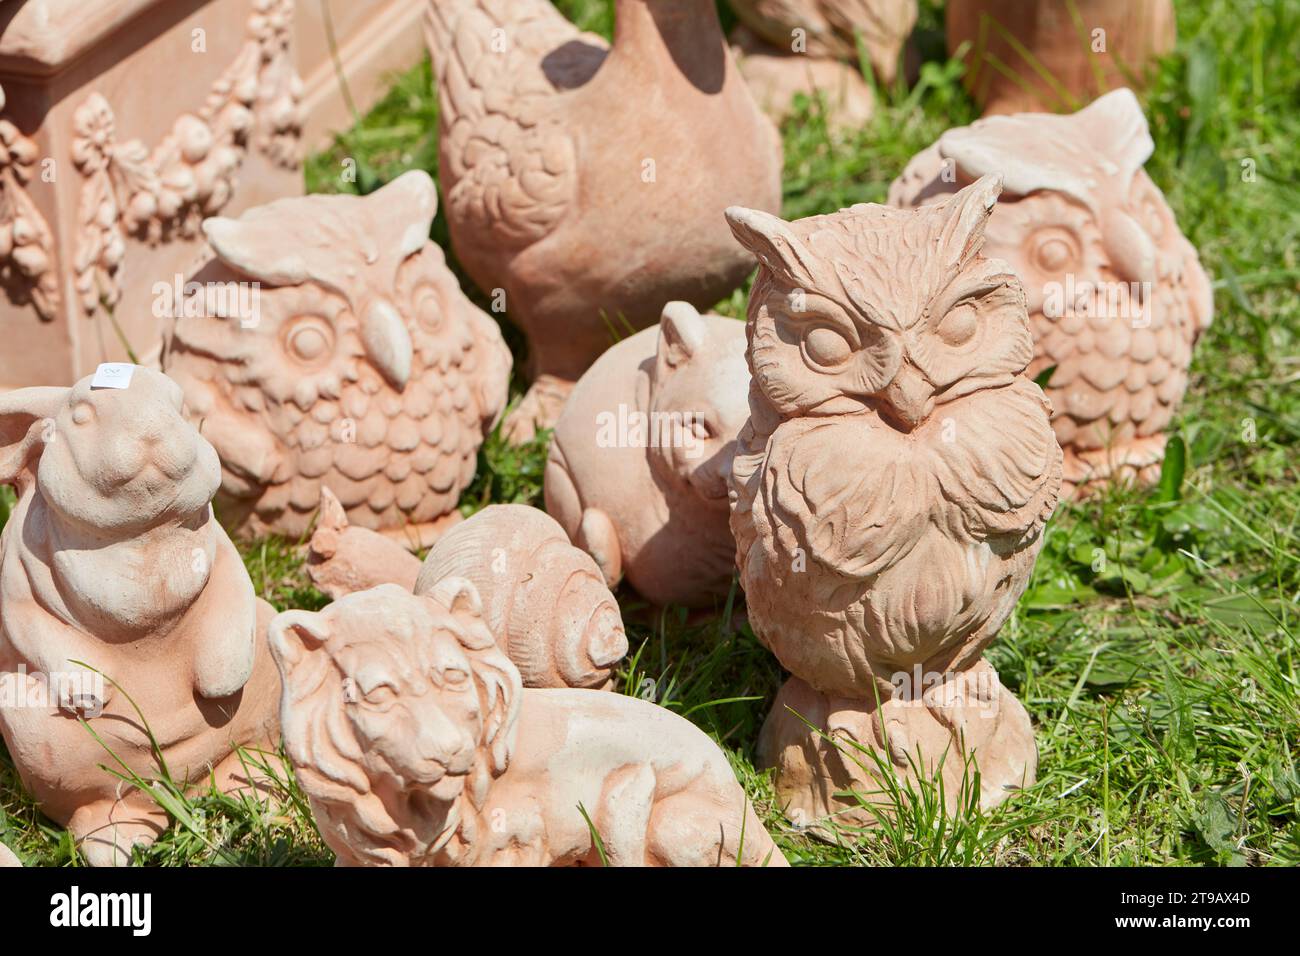 CARAVINO, ITALIE - 28 AVRIL 2023 : sculptures d'animaux de compagnie en terre cuite au printemps lors de la foire Tre Giorni per il Giardino au château Masino près de Turin, Italie. Banque D'Images